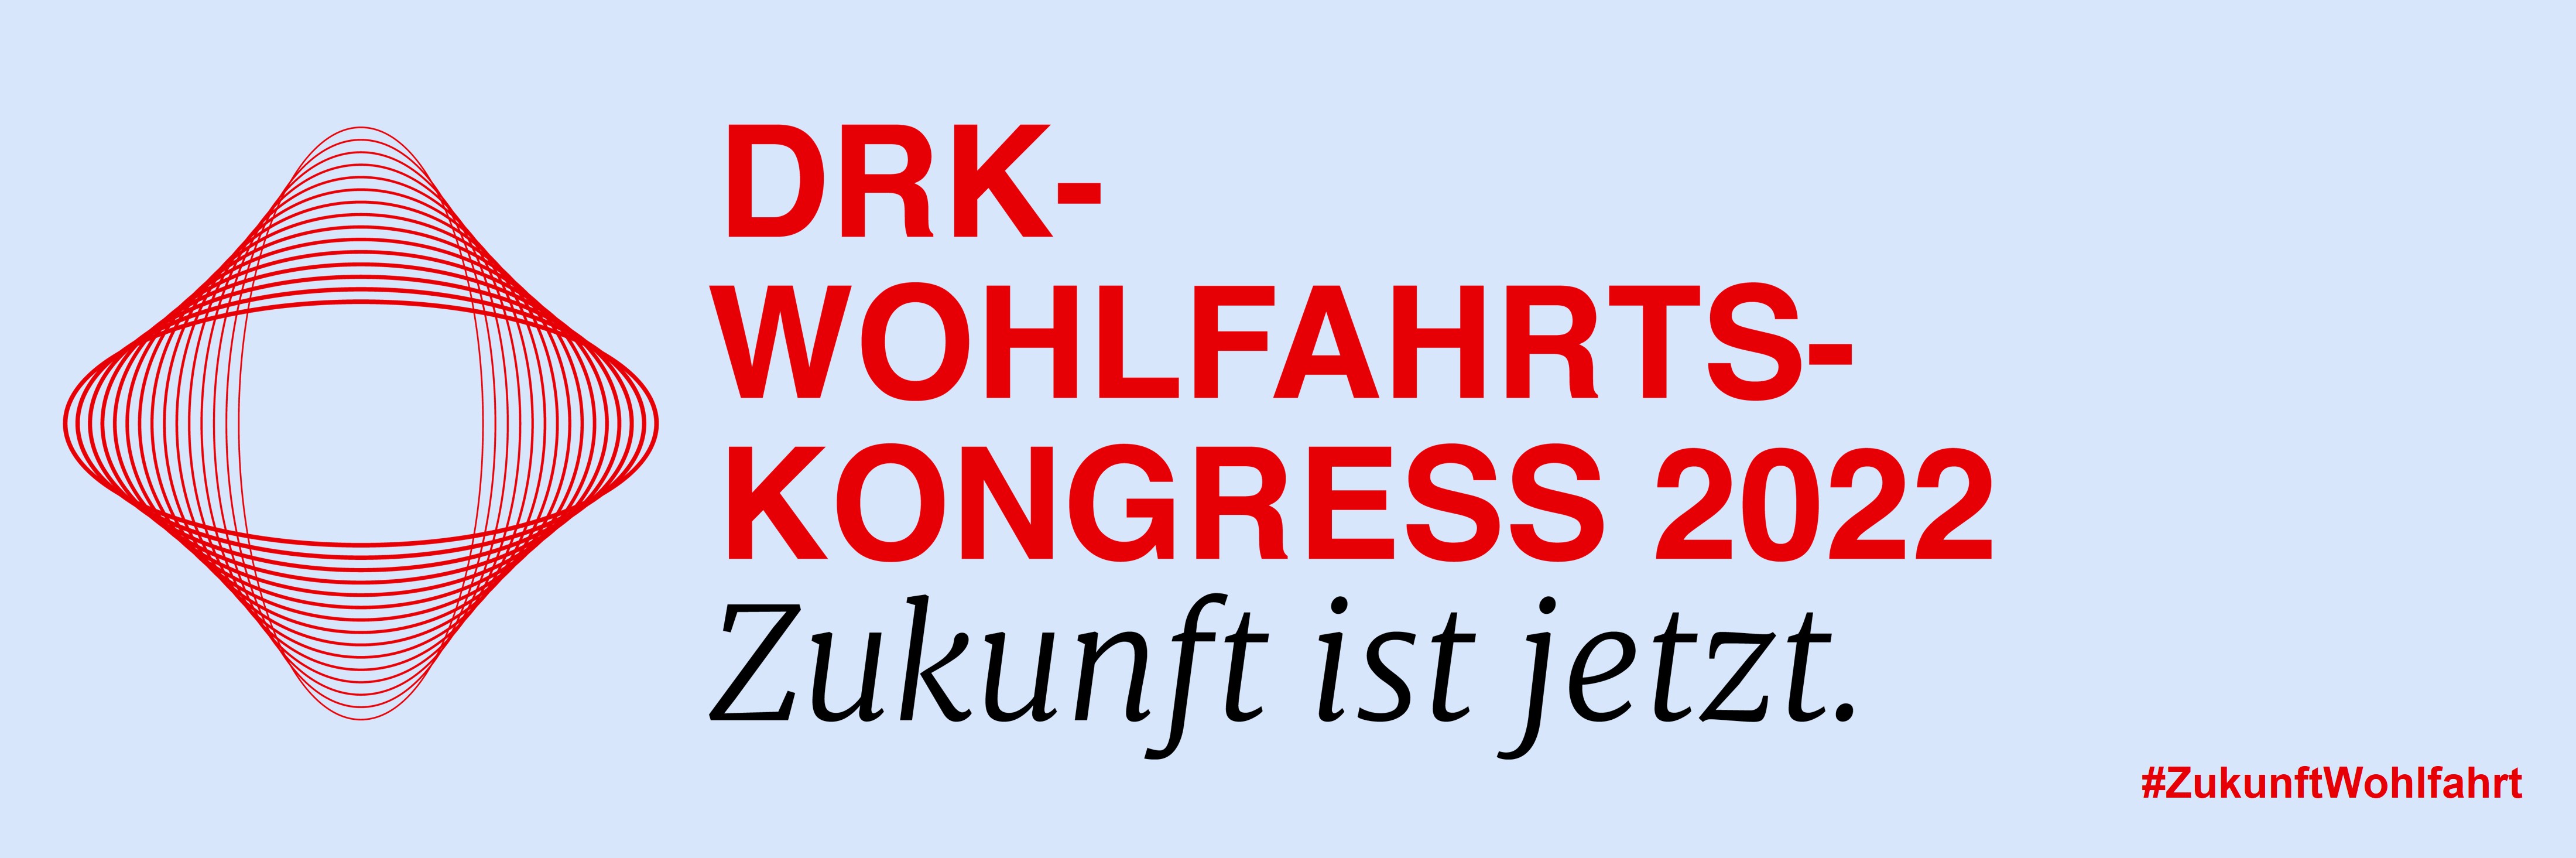 Der Titel des DRK-Wohlfahrtskongress 2022 lautet "Zukunft ist jetzt."